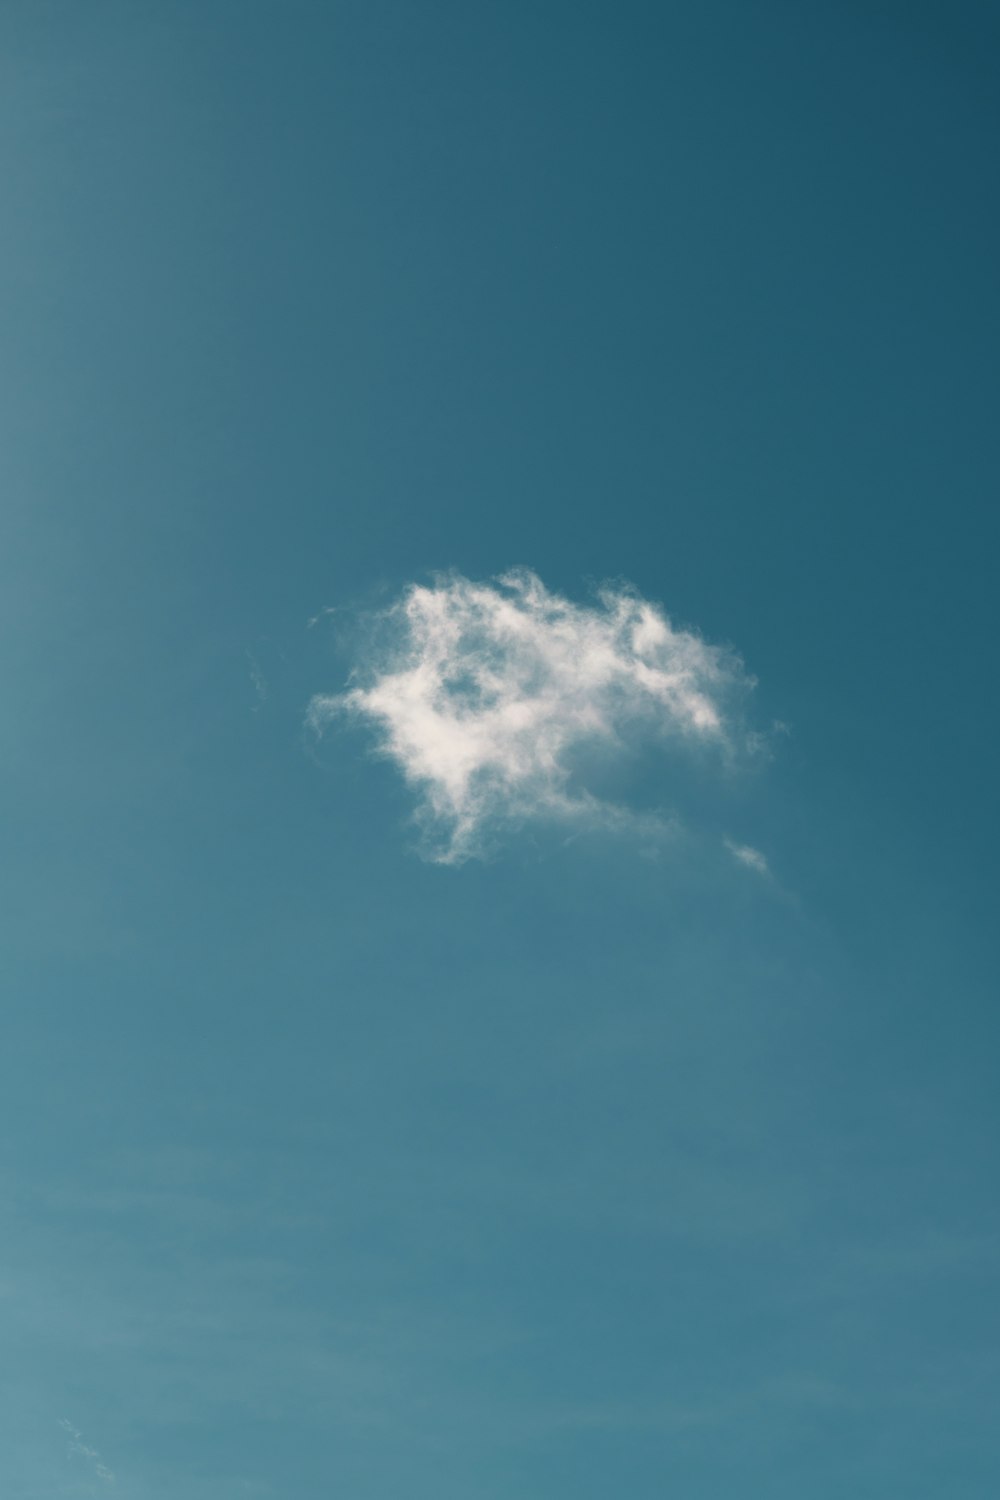 a lone cloud in a blue sky